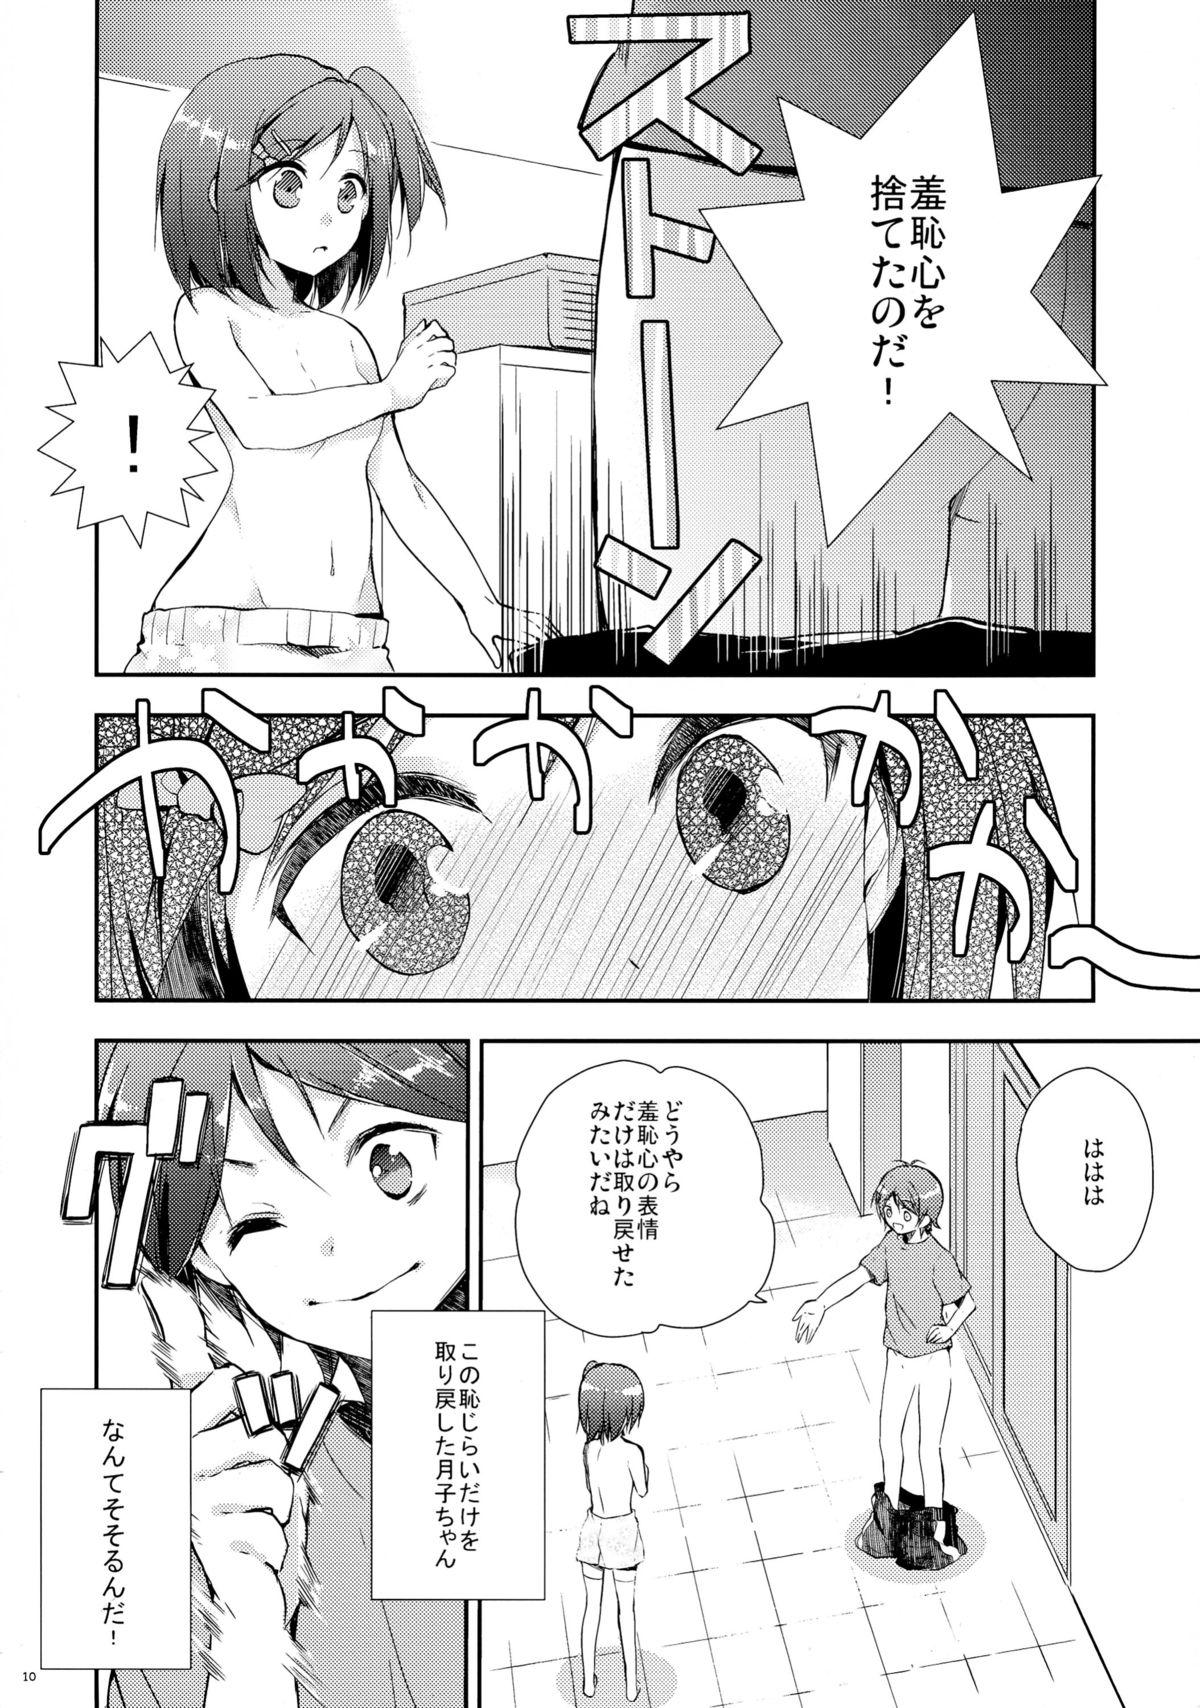 Tiny Tits Hentai Ouji to Hazukashii Neko. - Hentai ouji to warawanai neko Cuzinho - Page 10